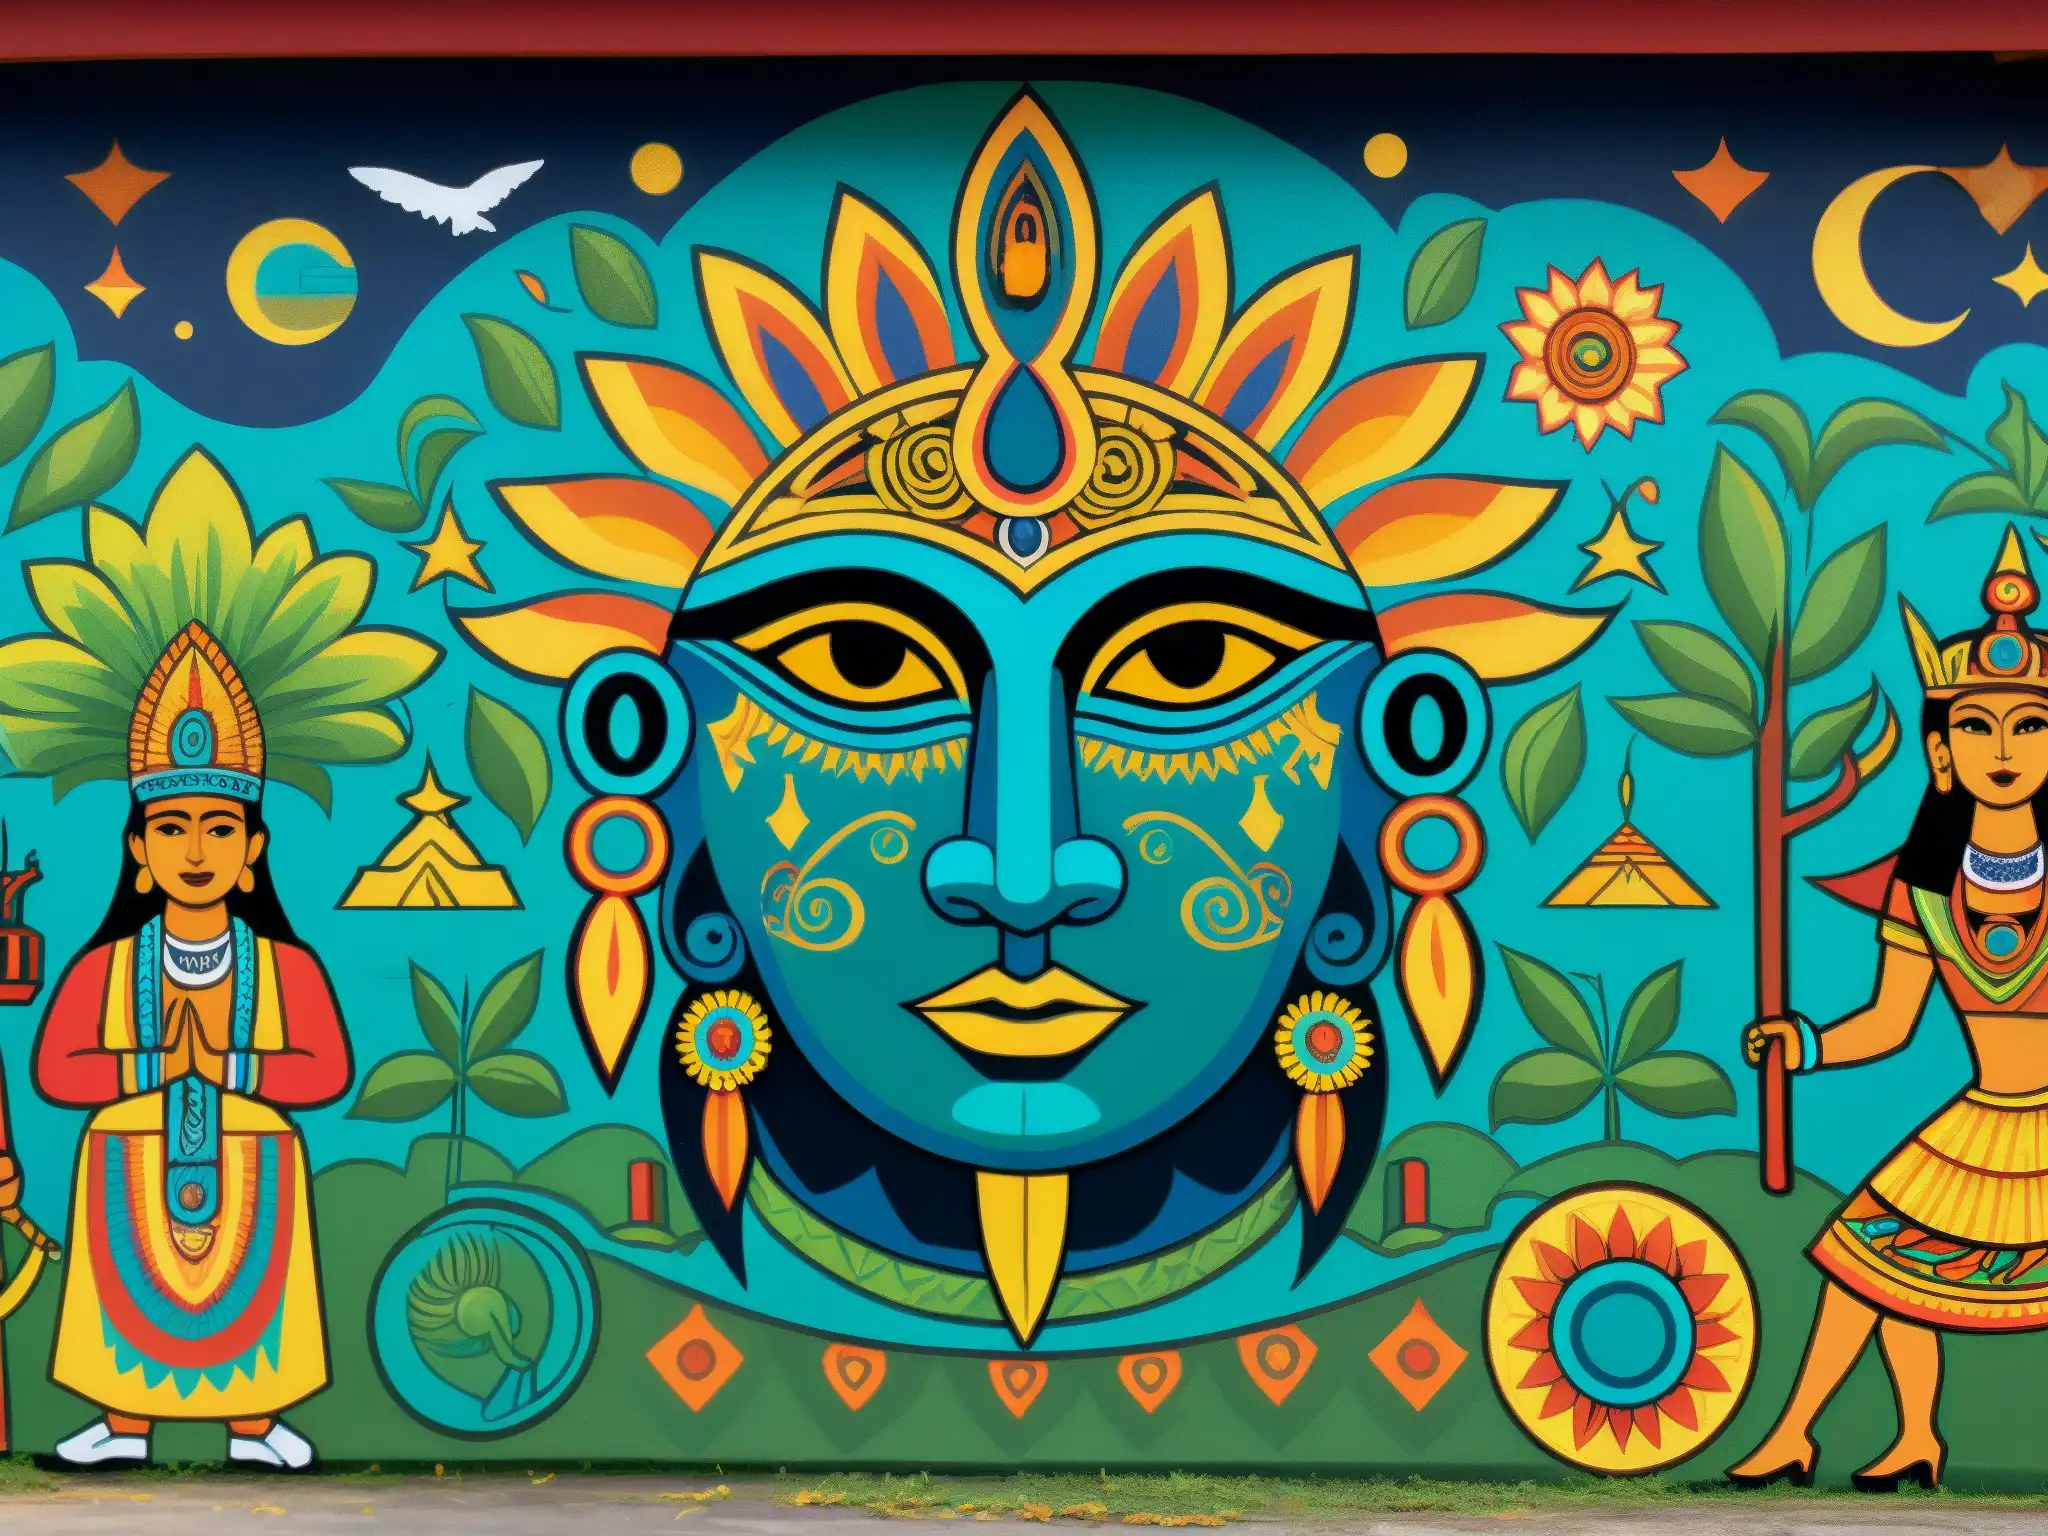 Un mural colorido que muestra teorías y leyendas urbanas de Latinoamérica, con criaturas míticas y símbolos enigmáticos